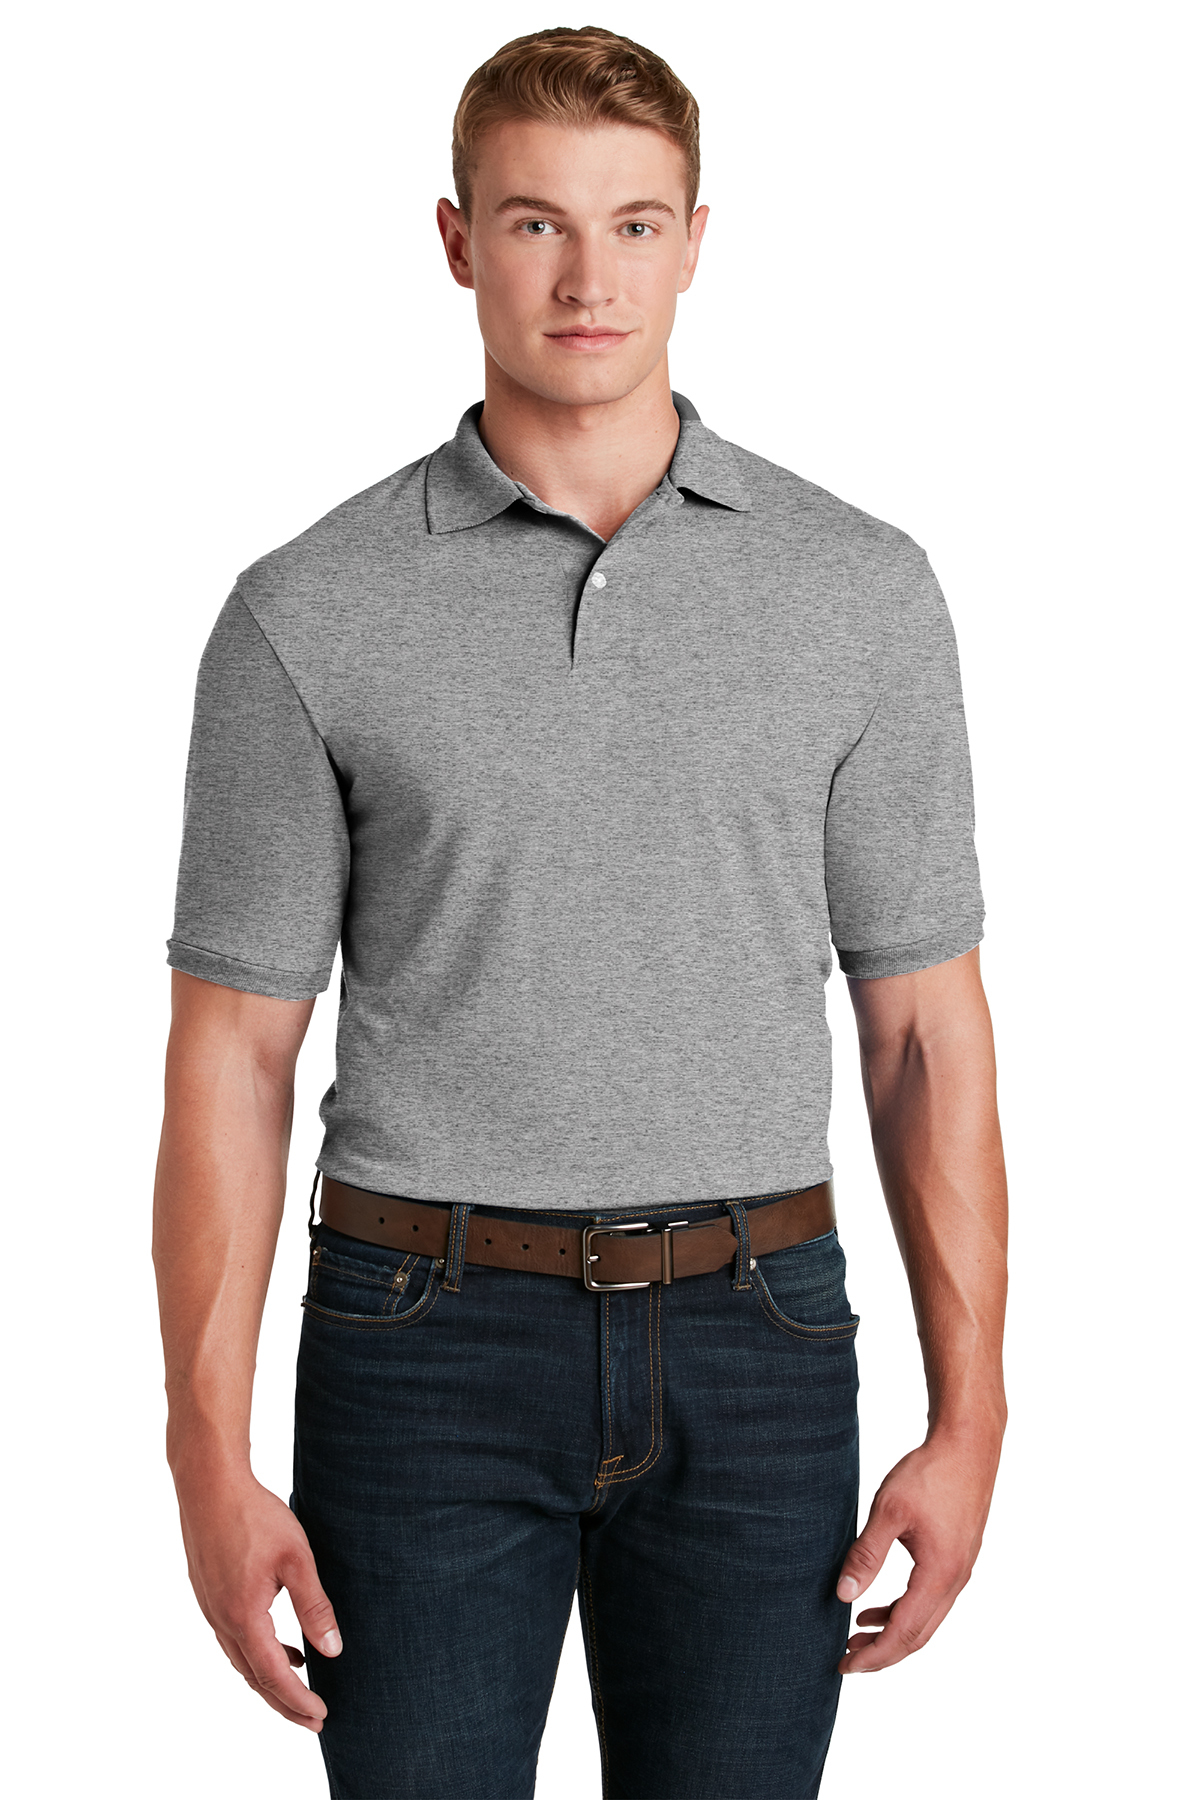 JERZEES - SpotShield™ 5.4-Ounce Jersey Knit Sport Shirt | Product | SanMar